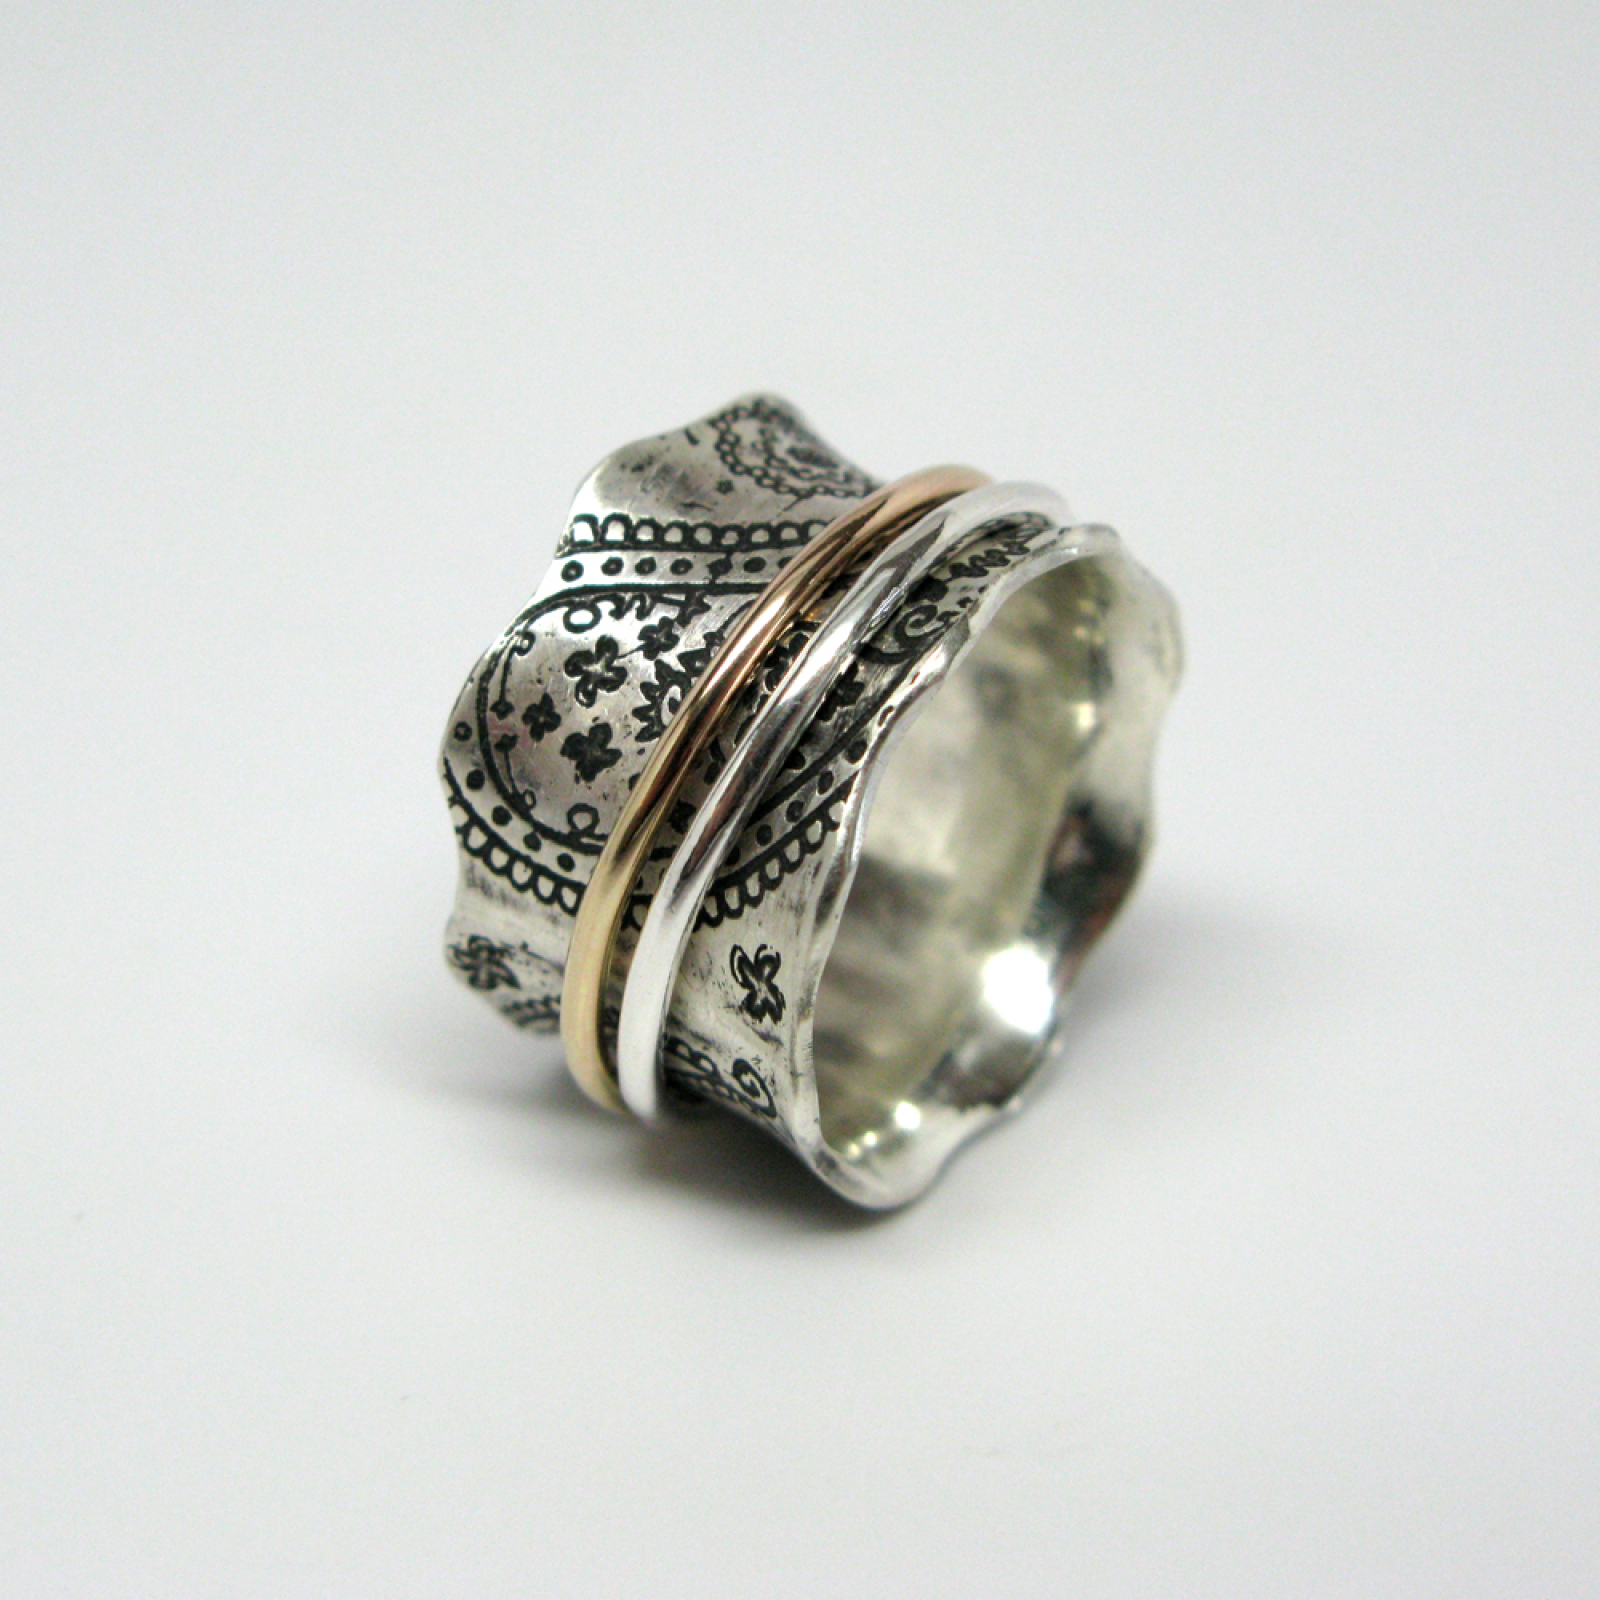 Spinner rings for women, spinner rings for men, silver spinner ring with  9ct gold bandsBluenoemi JewelryRings